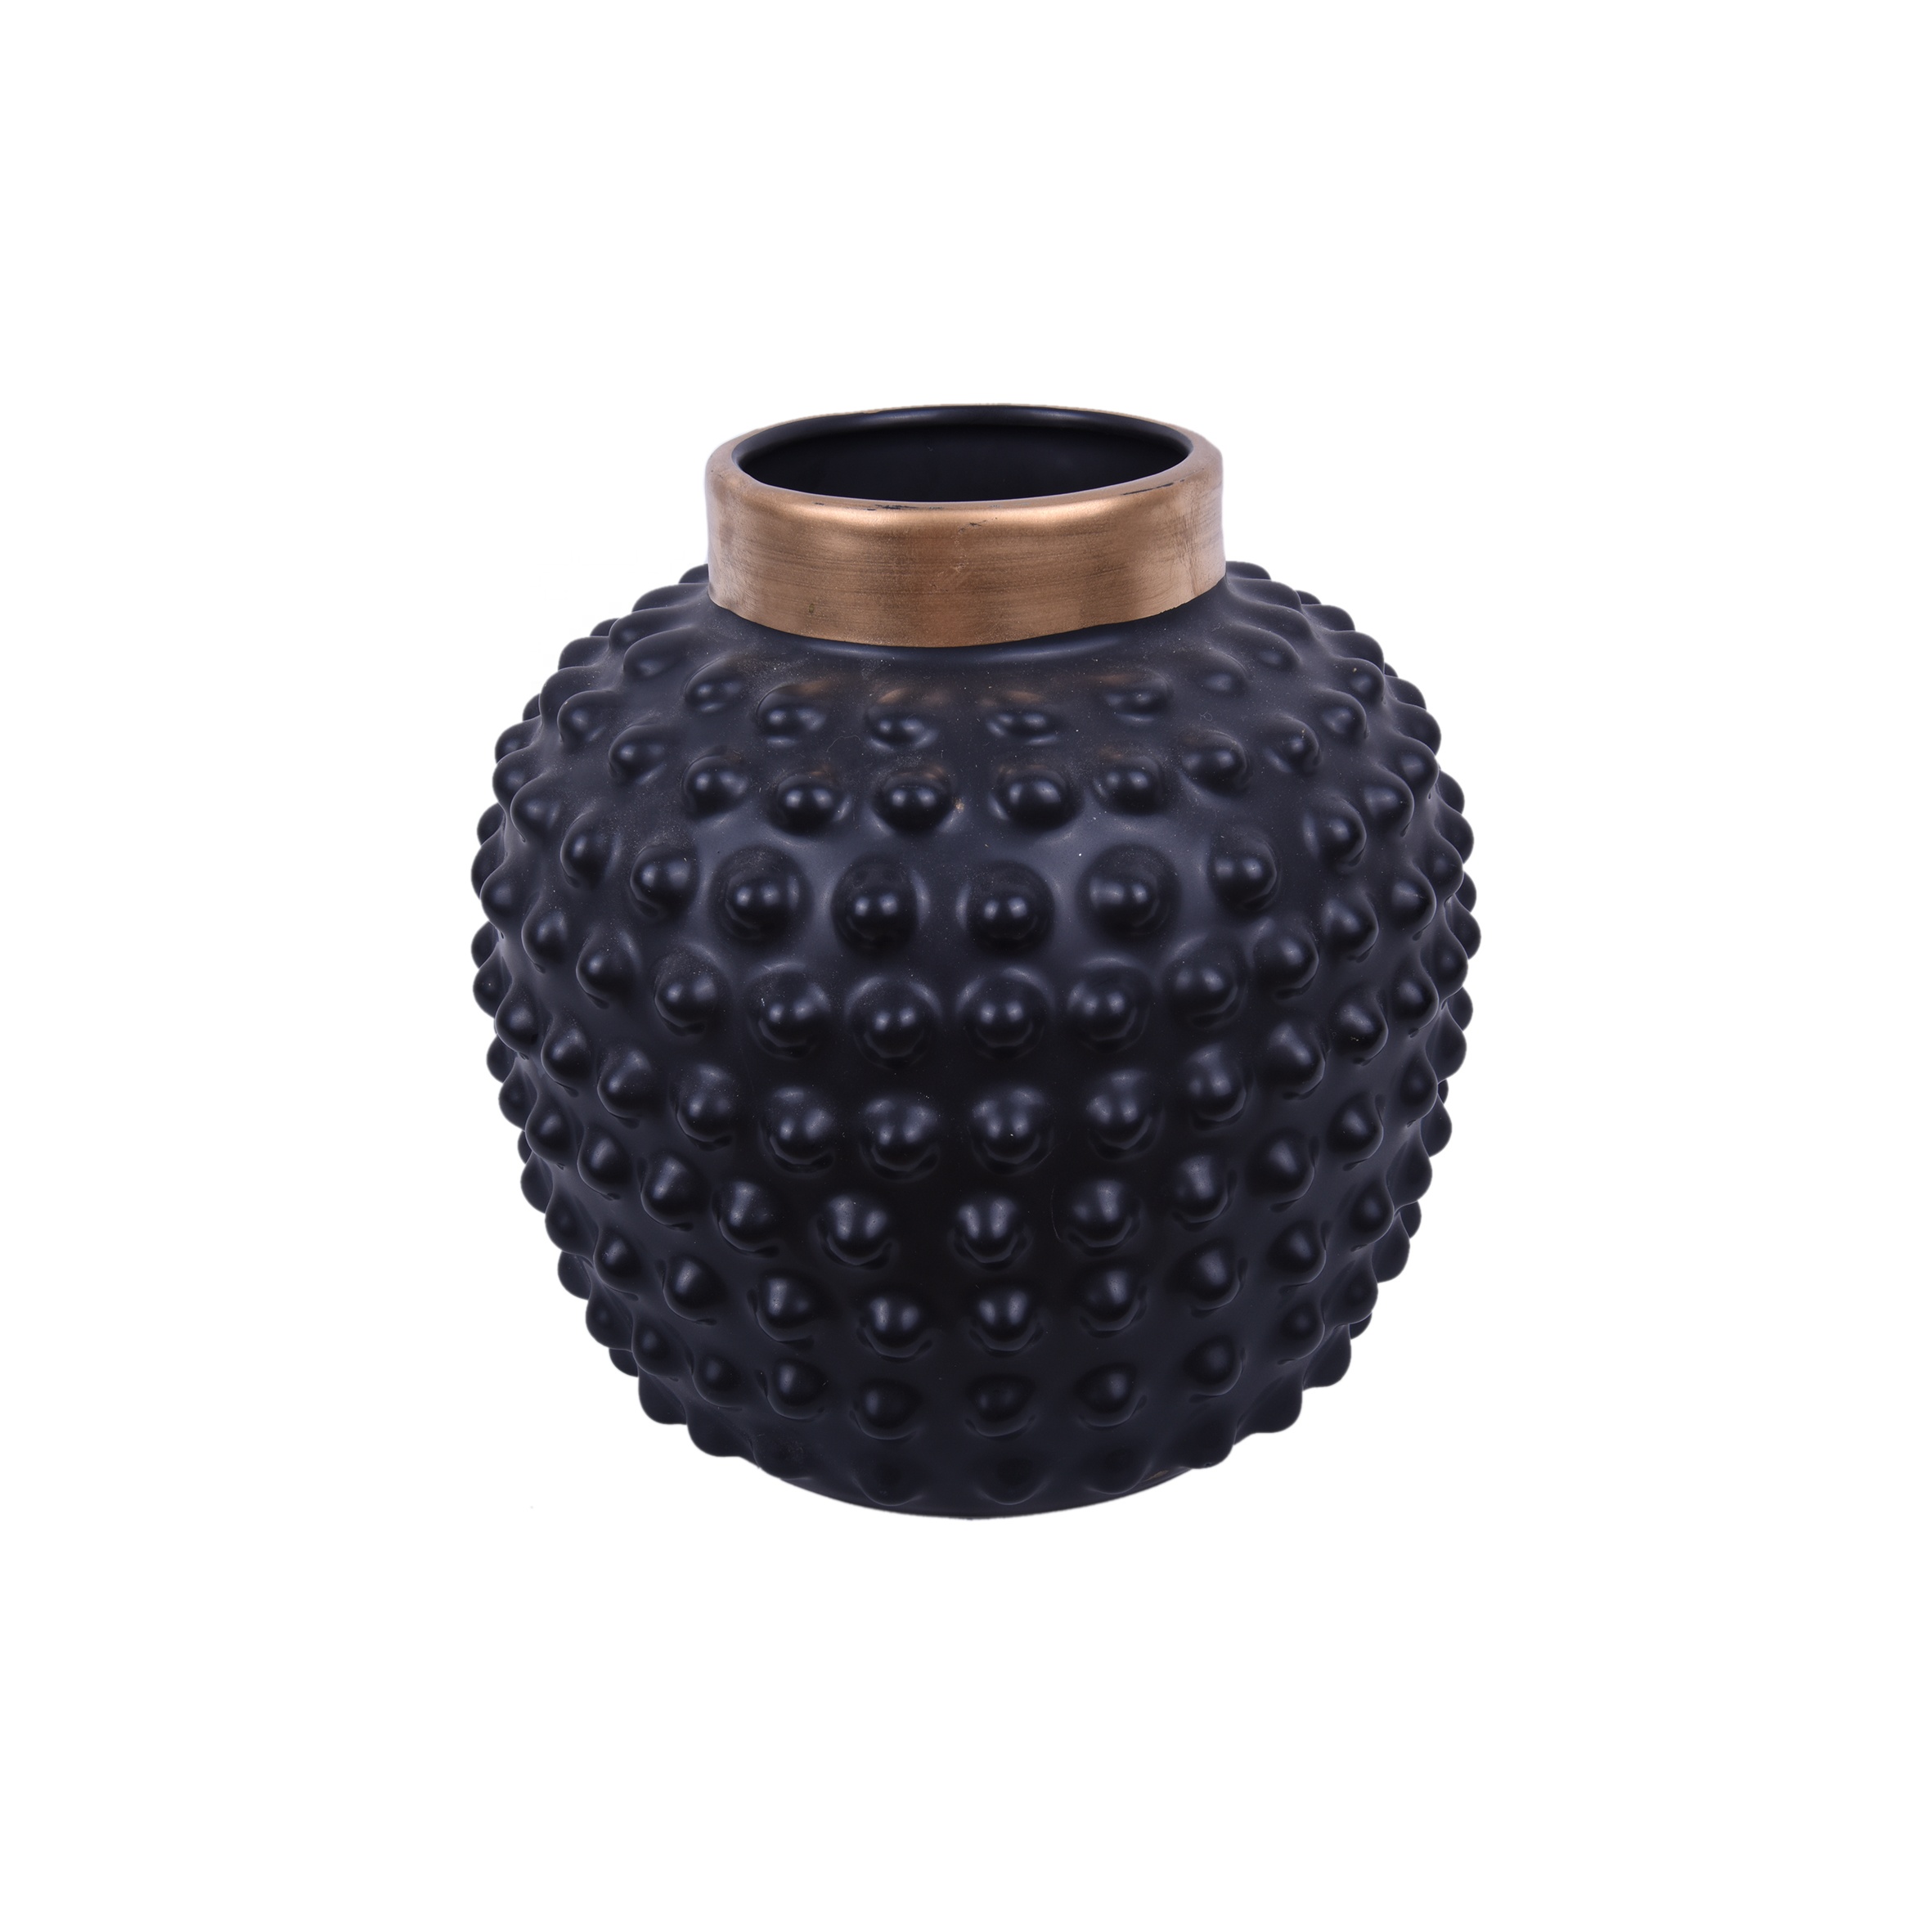 ceramic body vases for home decor ceramic